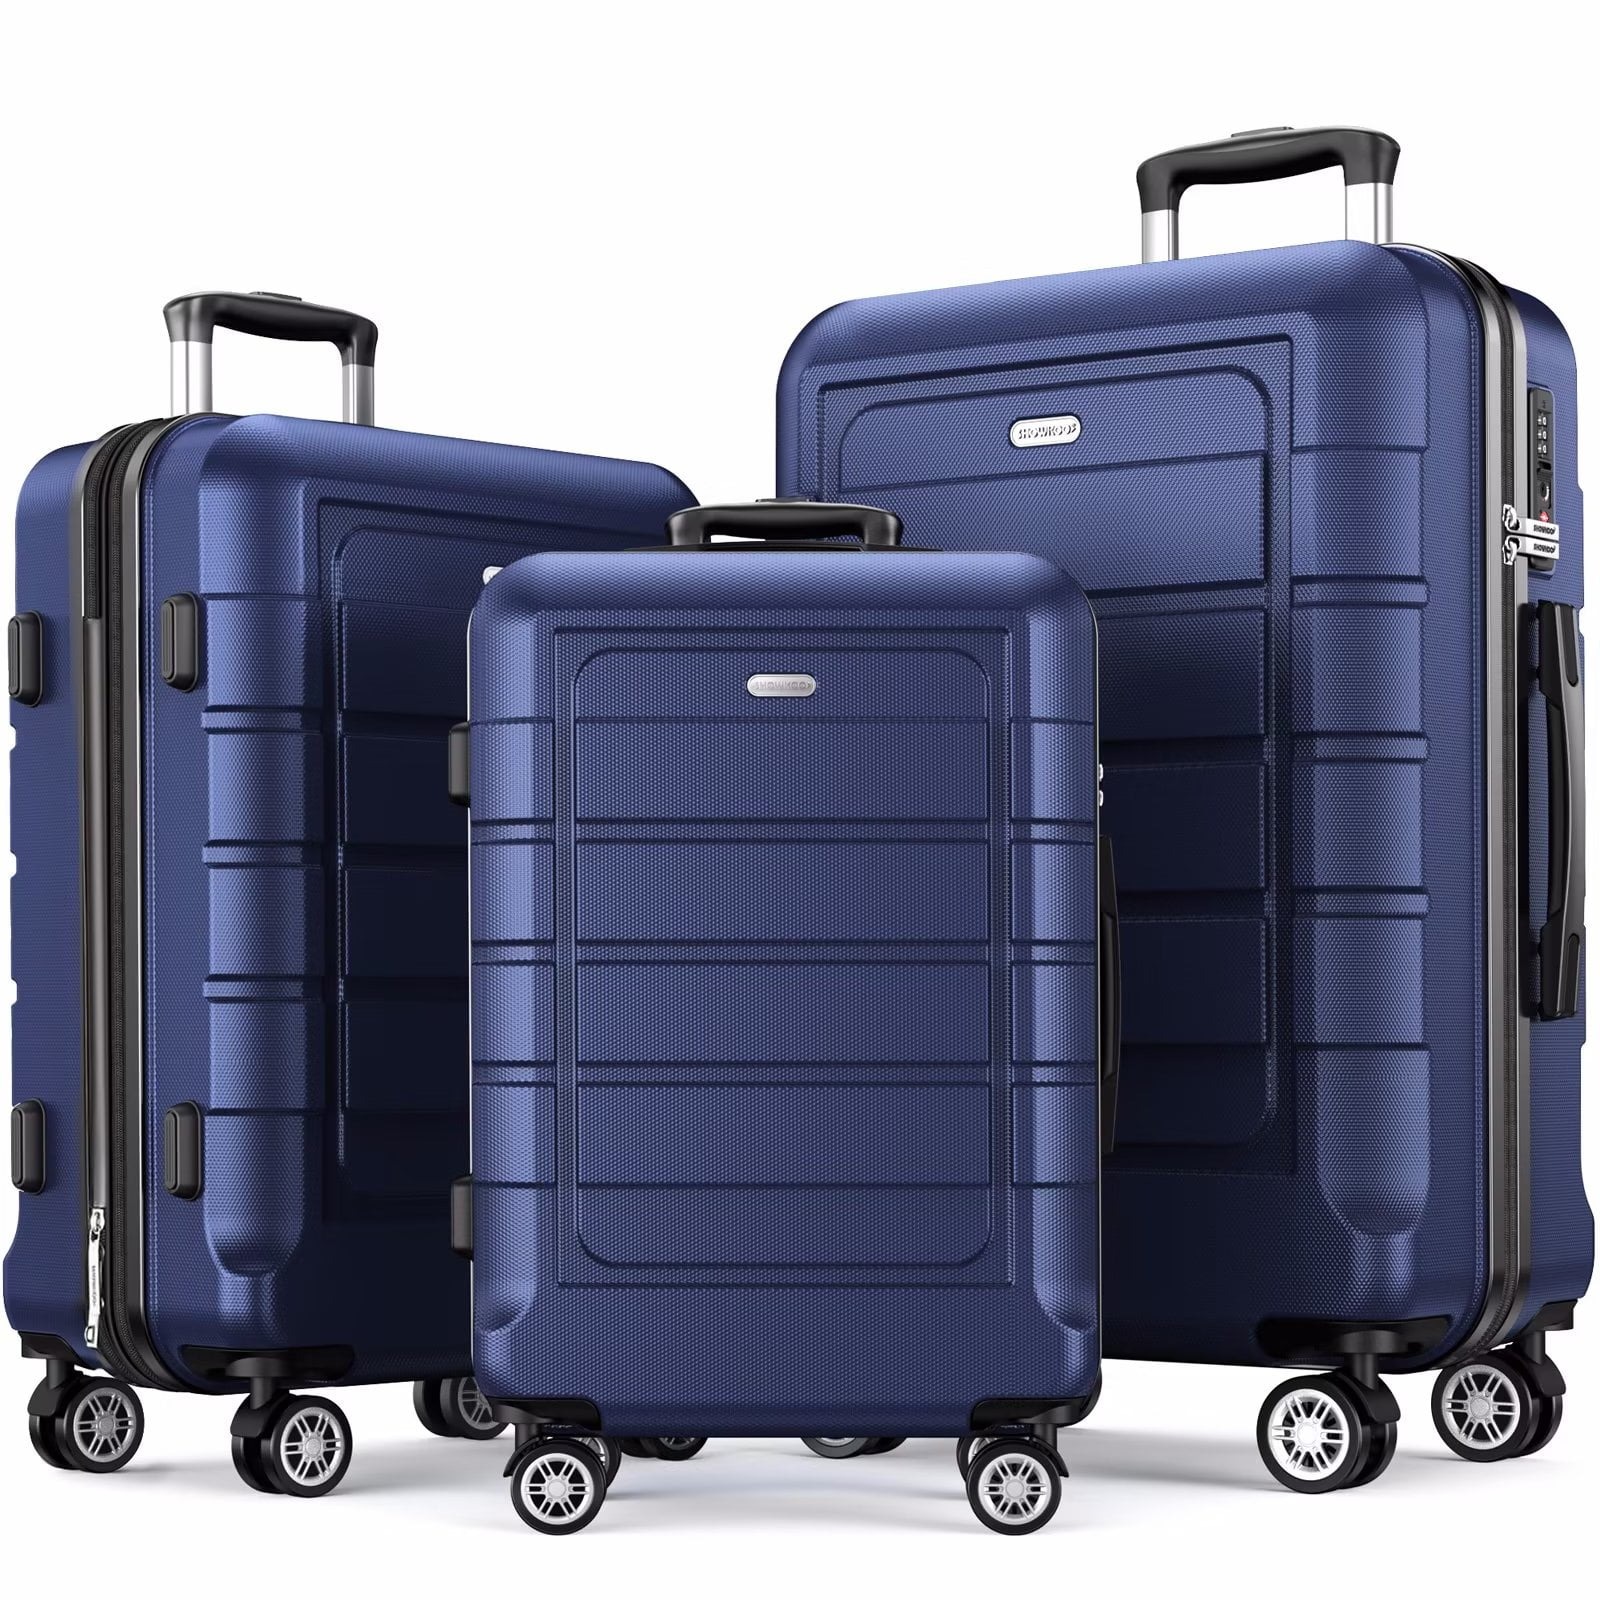 SHOWKOO Luggage Sets Expandable Suitcase Double | Ubuy Singapore